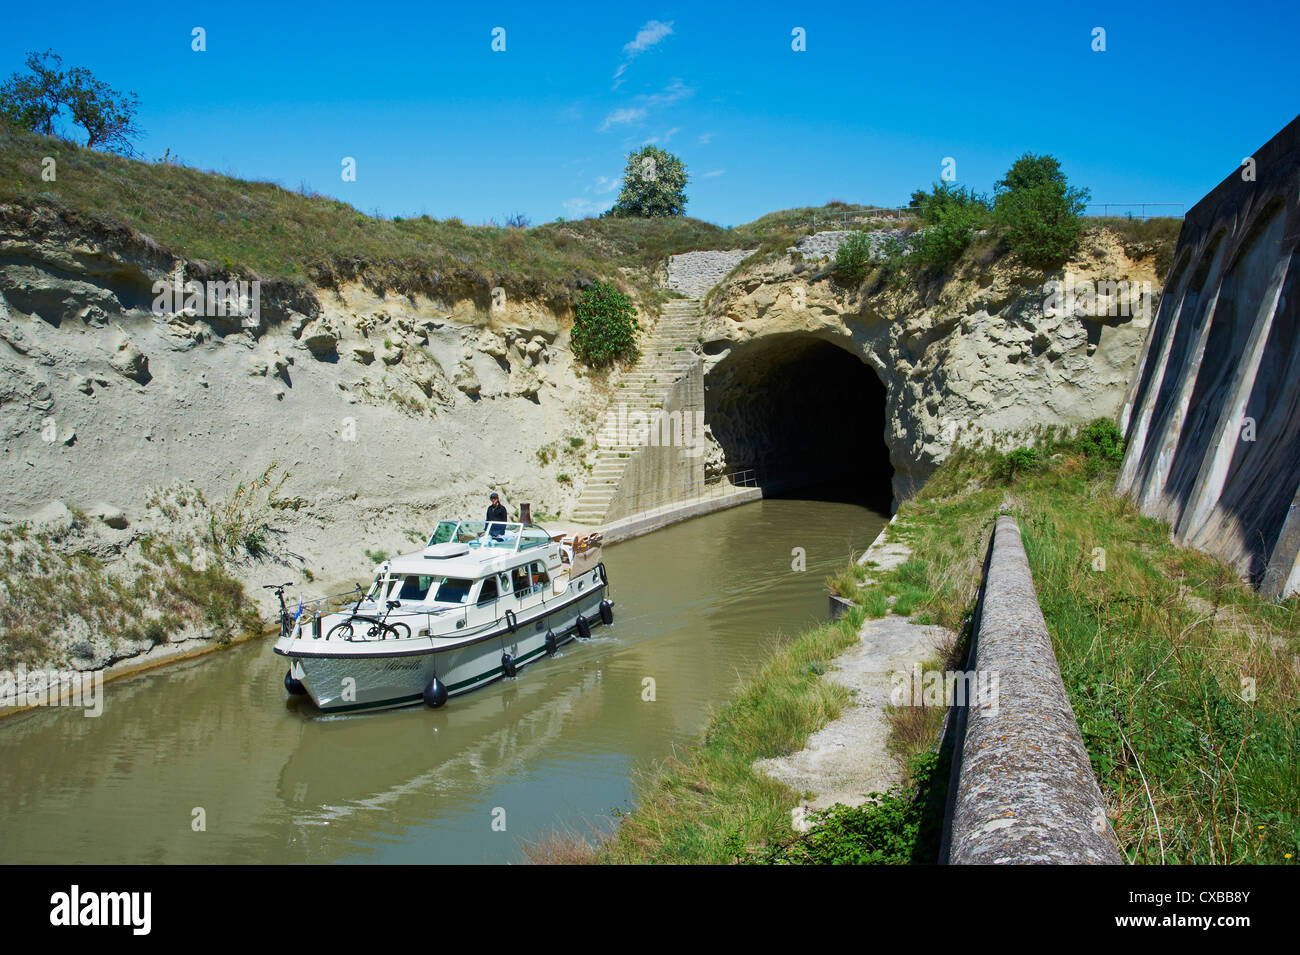 Tunnel von Malpas, Navigation und Bootsfahrt auf dem Canal du Midi, UNESCO-Weltkulturerbe, Herault, Languedoc Roussillon, Frankreich Stockfoto